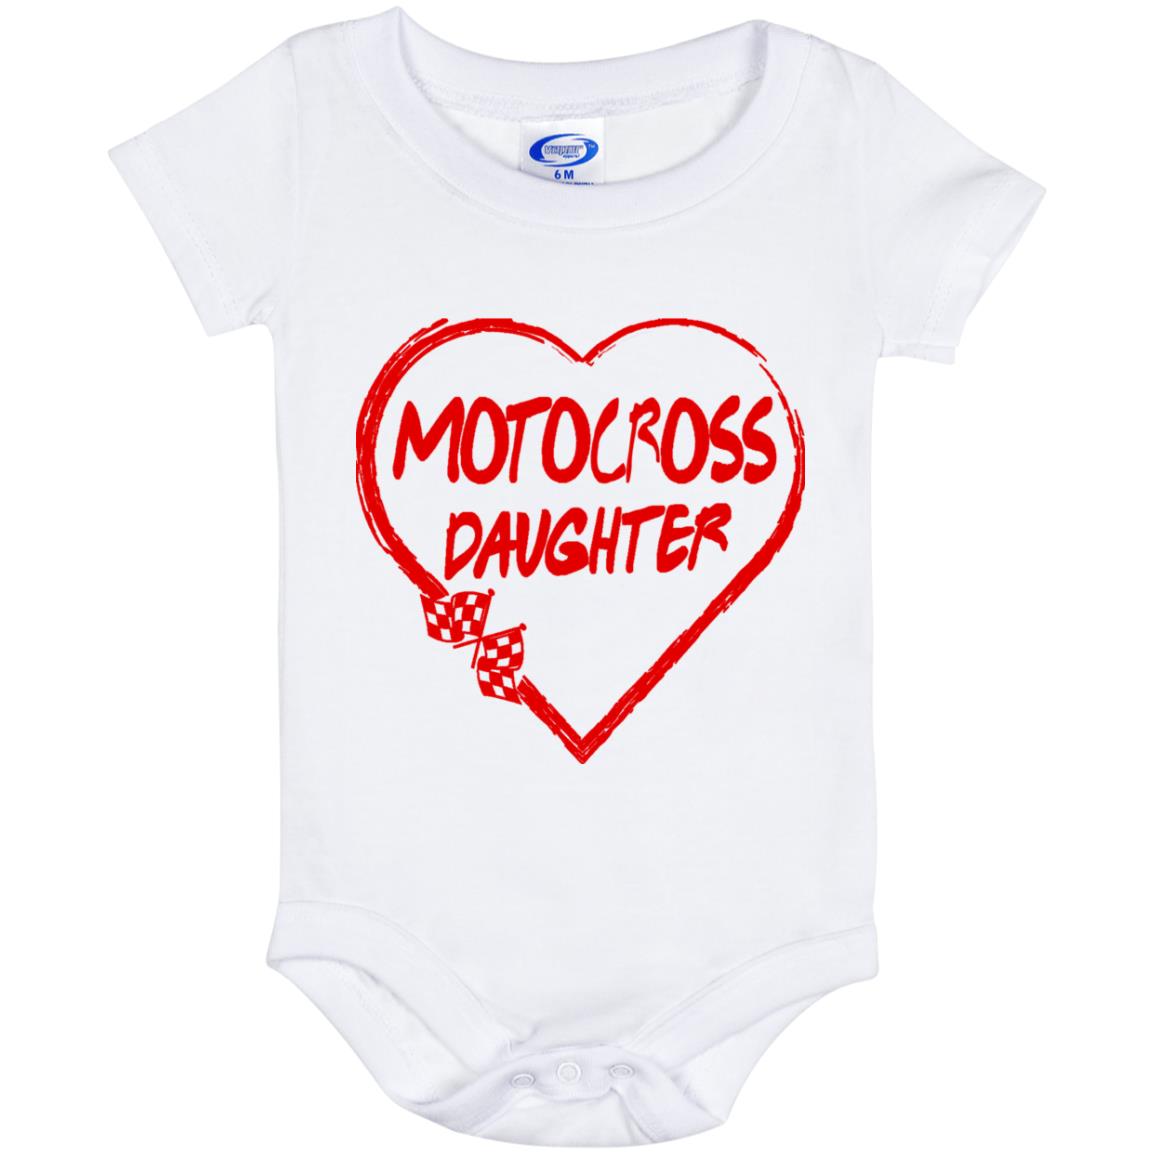 Motocross Daughter Heart Baby Onesie 6 Month